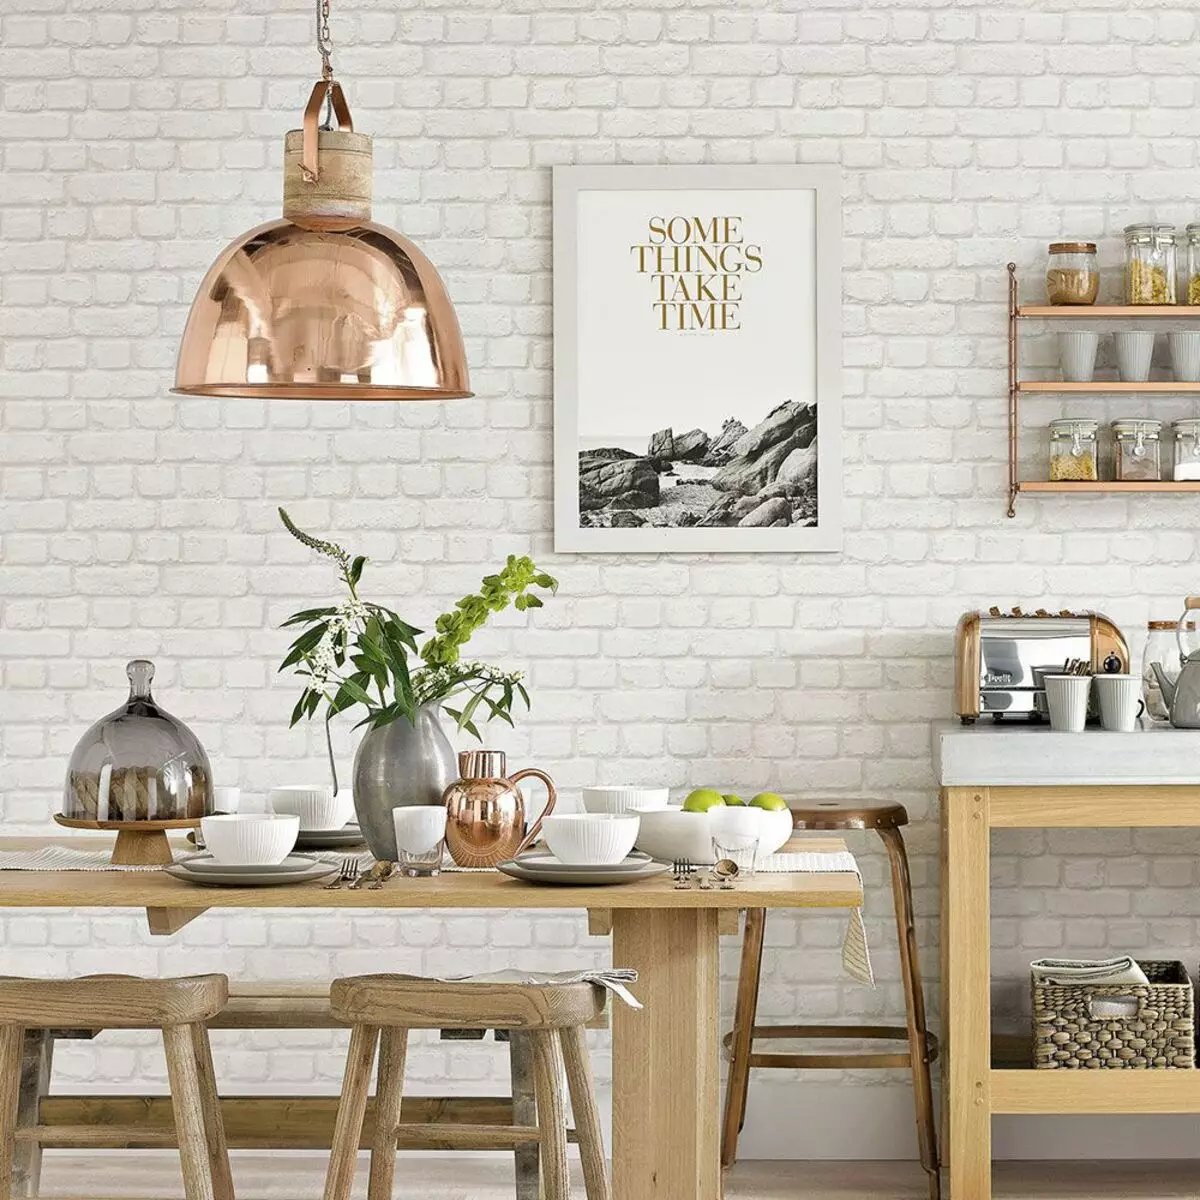 Hình nền cho nhà bếp (102 ảnh): Thiết kế hình nền nhà bếp cho tường bếp trong căn hộ, đẹp sáng, sáng và các tùy chọn hình nền khác trong nội thất 21113_5